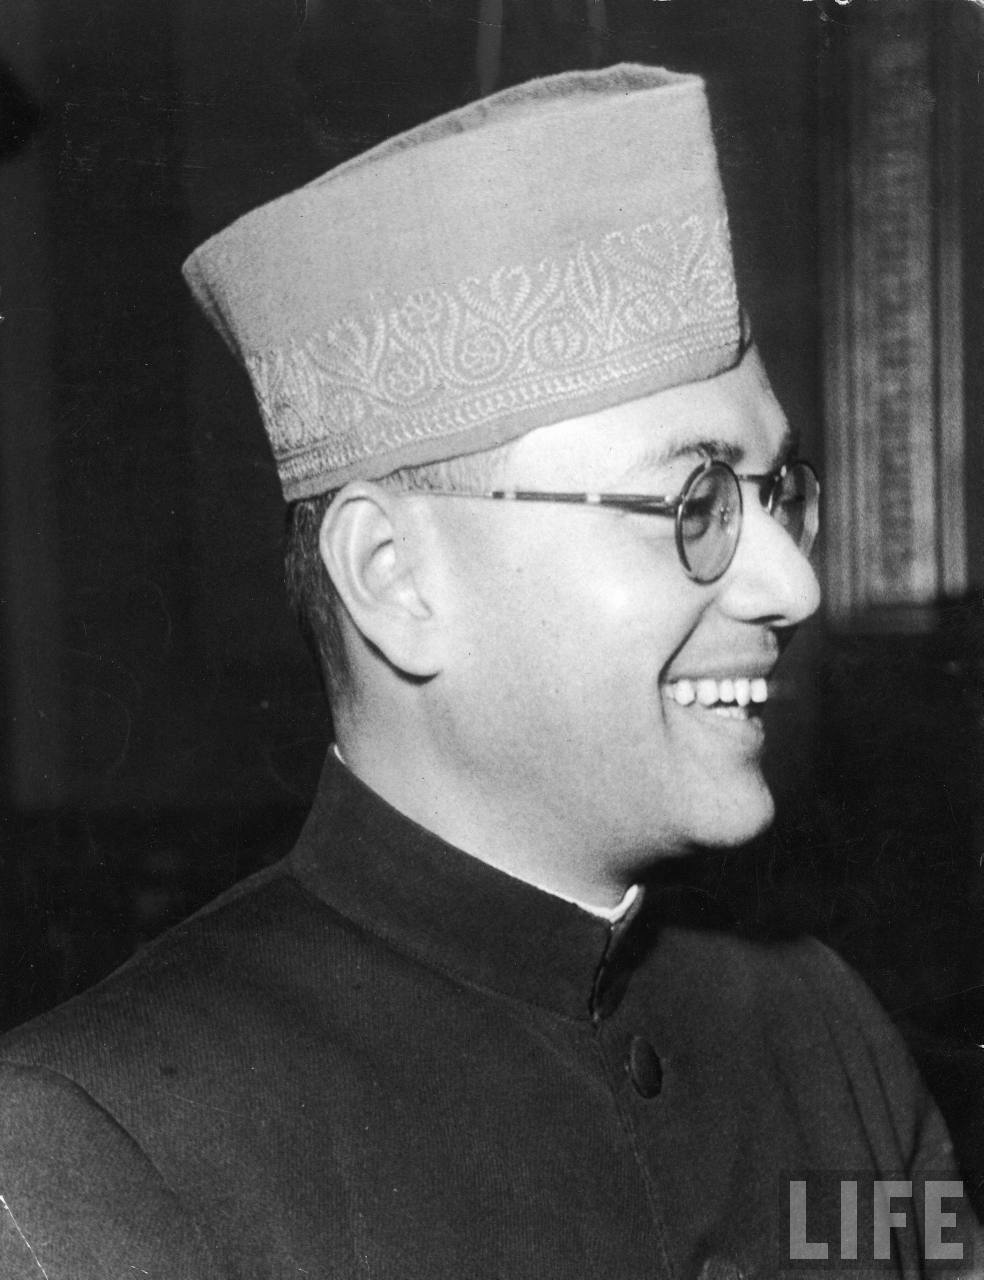 Subhas Chandra Bose in 1940